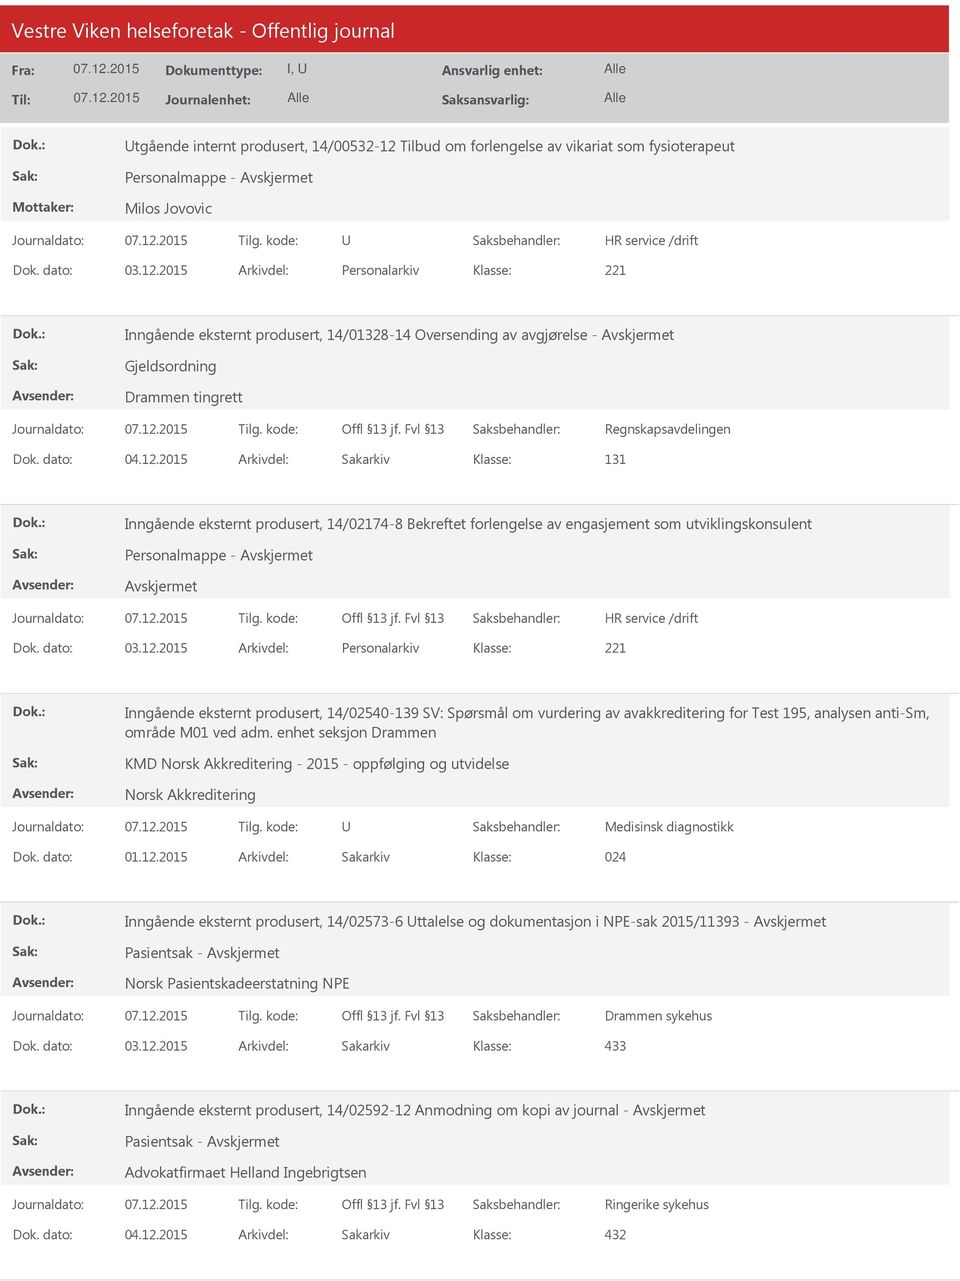 enhet seksjon Drammen KMD Norsk Akkreditering - 2015 - oppfølging og utvidelse Norsk Akkreditering Medisinsk diagnostikk Dok. dato: 01.12.